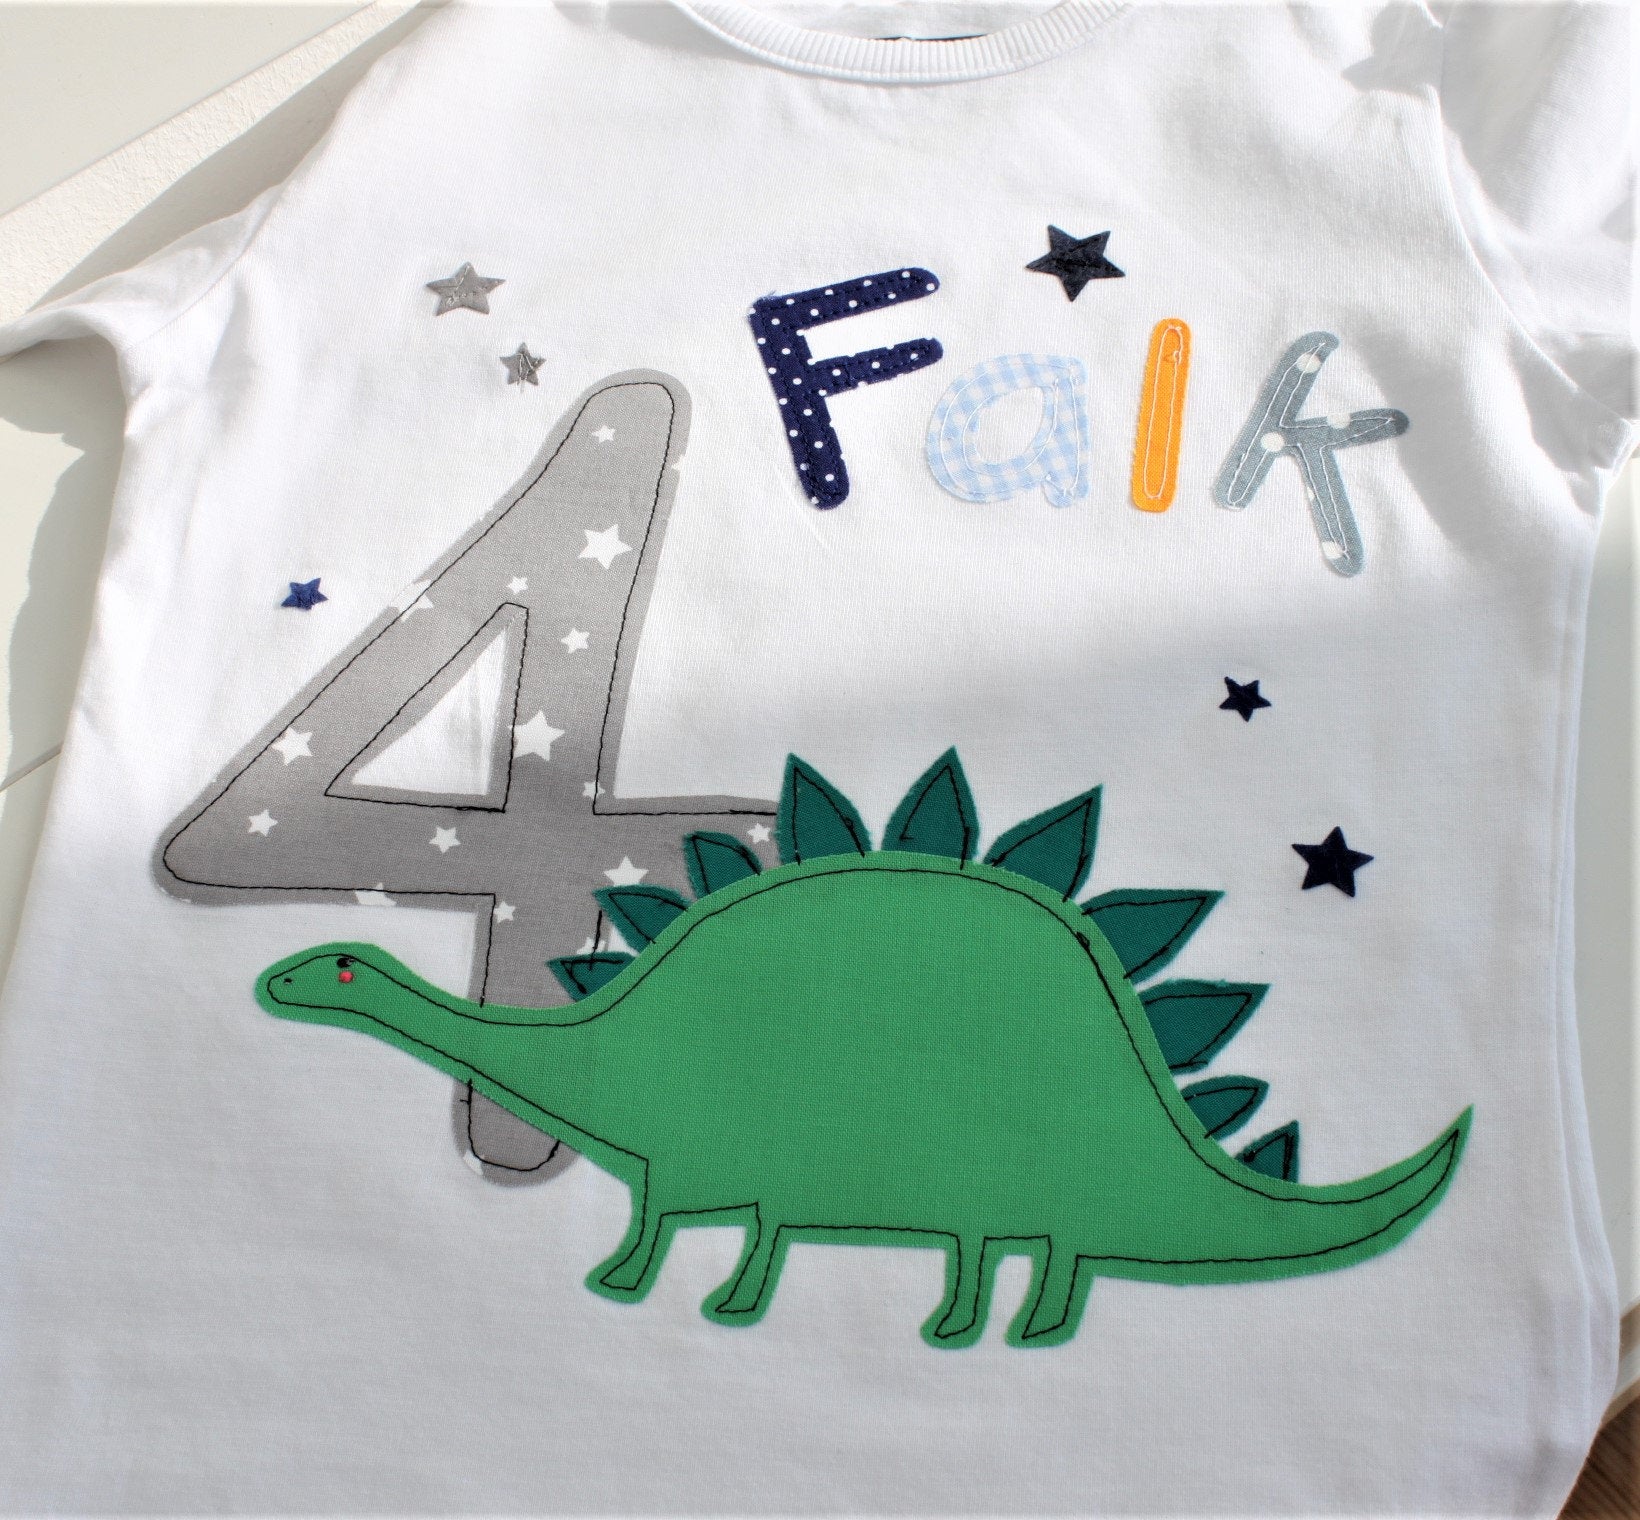 Geburtstagsshirt Kinder,Geburtstagsshirt,Shirt für Jungen,Shirt mit Name,Shirt mit Zahl,Shirt Dinosaurier,Dinoshirt,T-Shirt,Milla Louise